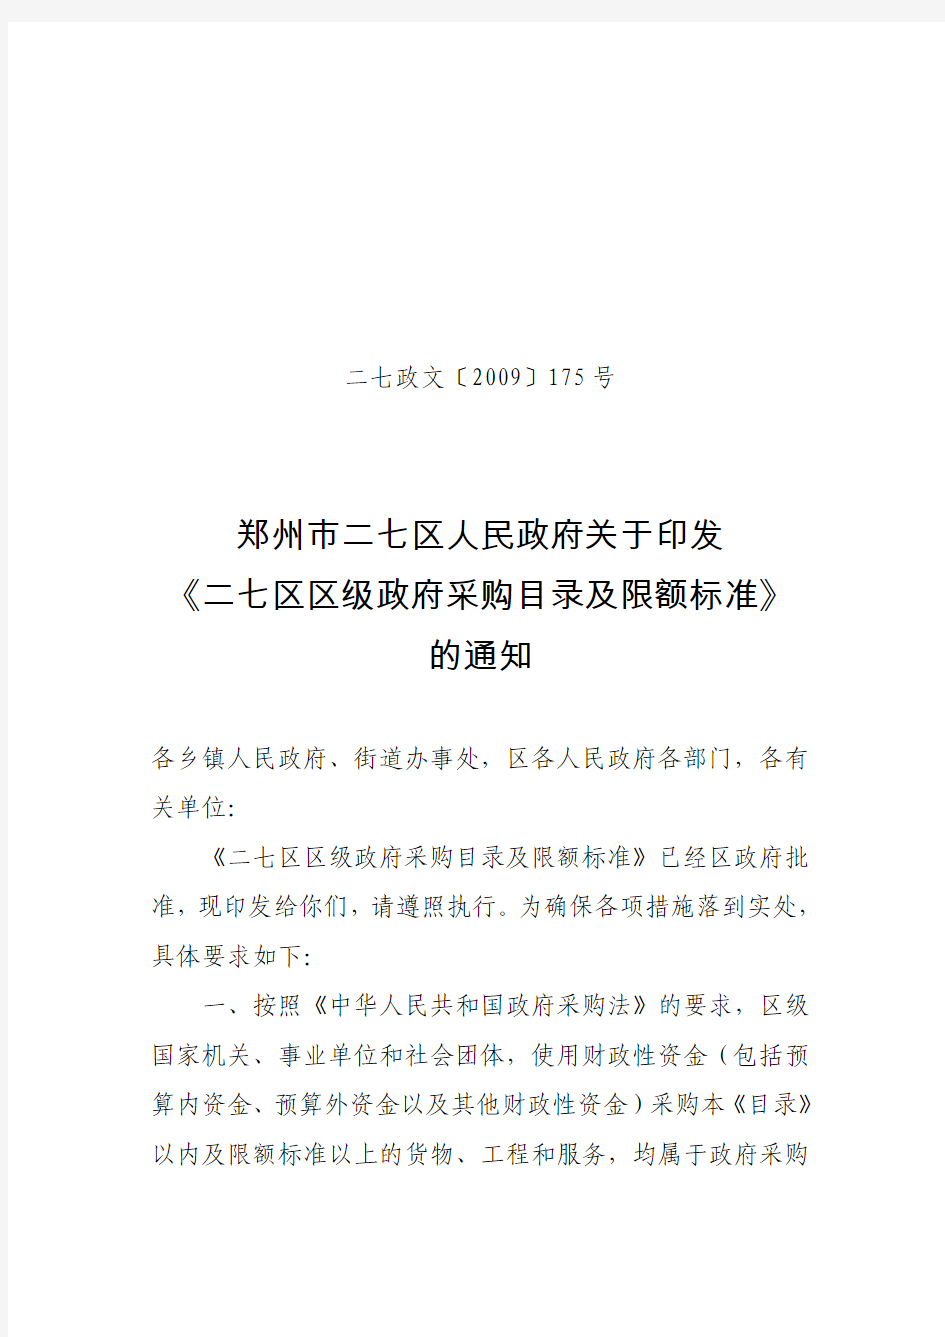 郑州市二七区人民政府关于印发二七区区级政府采购目录及限额标准的